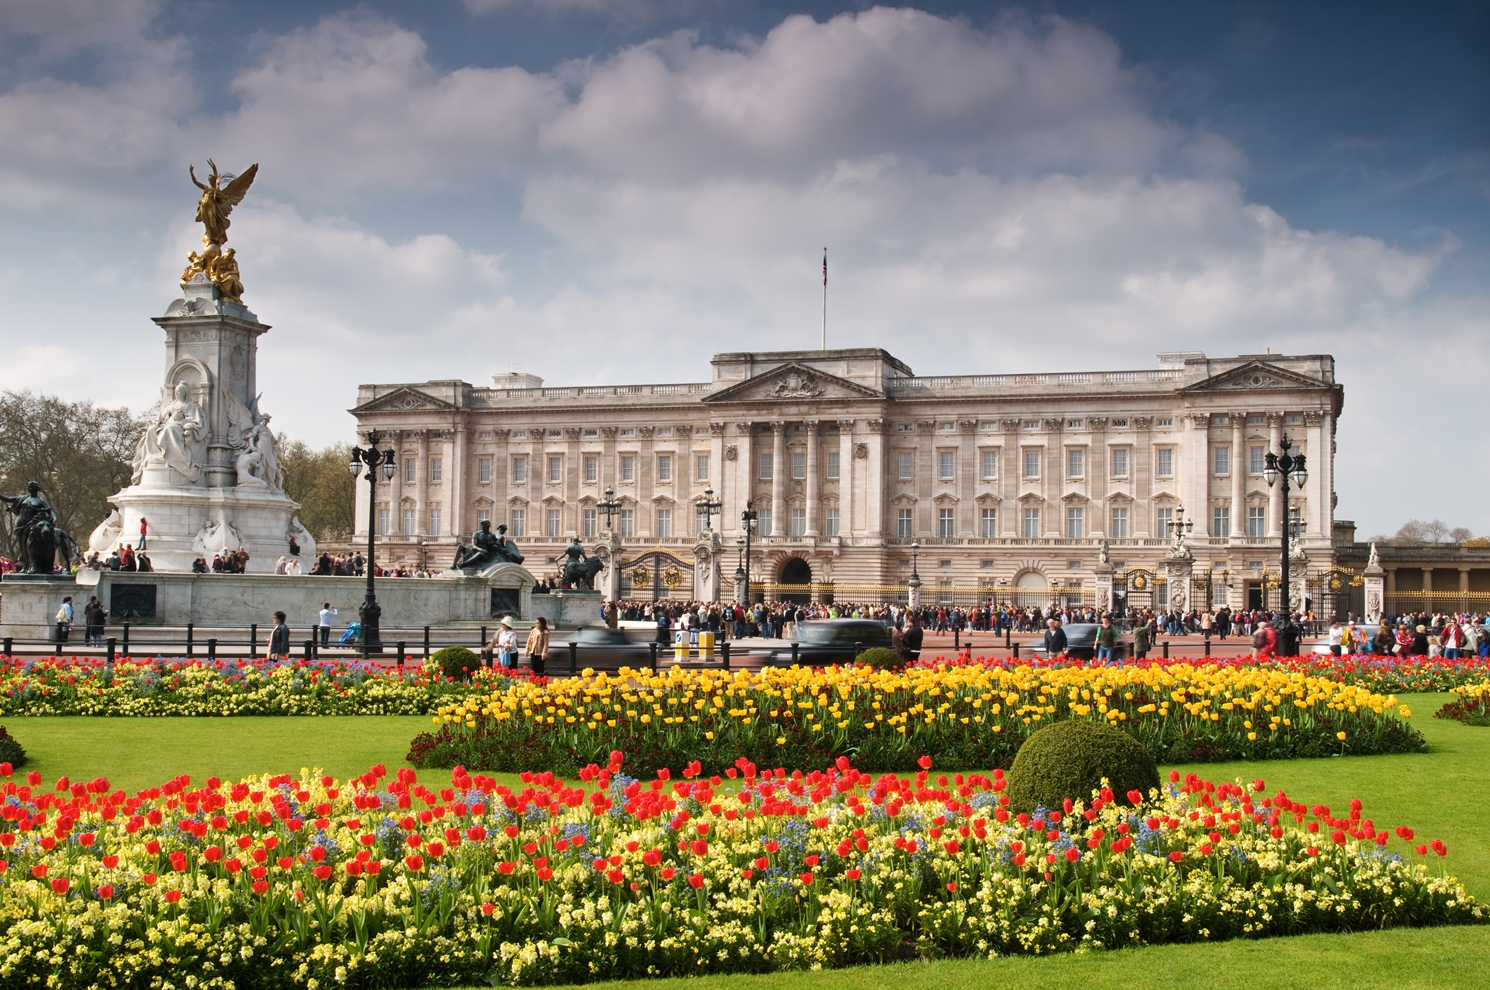 Buckingham Sarayı

                                    
                                    İngiliz Kraliyet Ailesi'nin Londra'da yaşadığı saray, 18. yüzyılın başlarında inşa edildi. Sarayda 775 oda, 19 devlet odası, 52 kraliyet ve misafir yatak odası, 188 personel yatak odası, 92 ofis ile 78 banyo bulunuyor. Sarayın değeri ise 1.550.000.000 dolar.
                                
                                